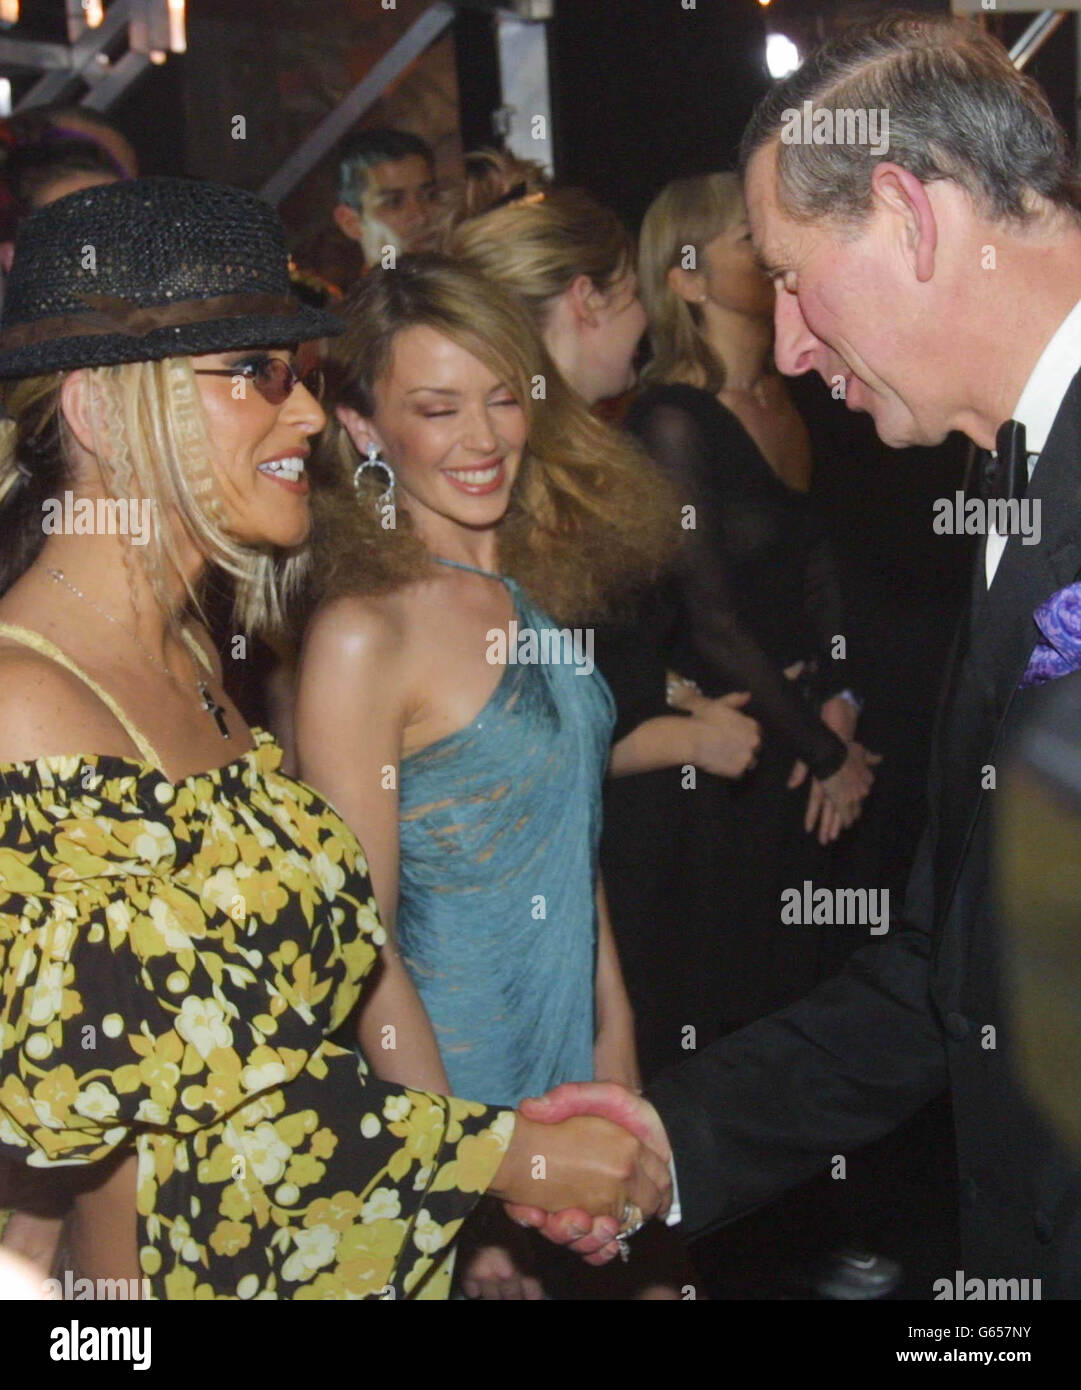 The Prince of Wales (rechts) spricht nach der Royal Variety Performance mit der amerikanischen Sängerin Anastacia (links) und dem australischen Popstar Kylie Minogue (Mitte). Stockfoto